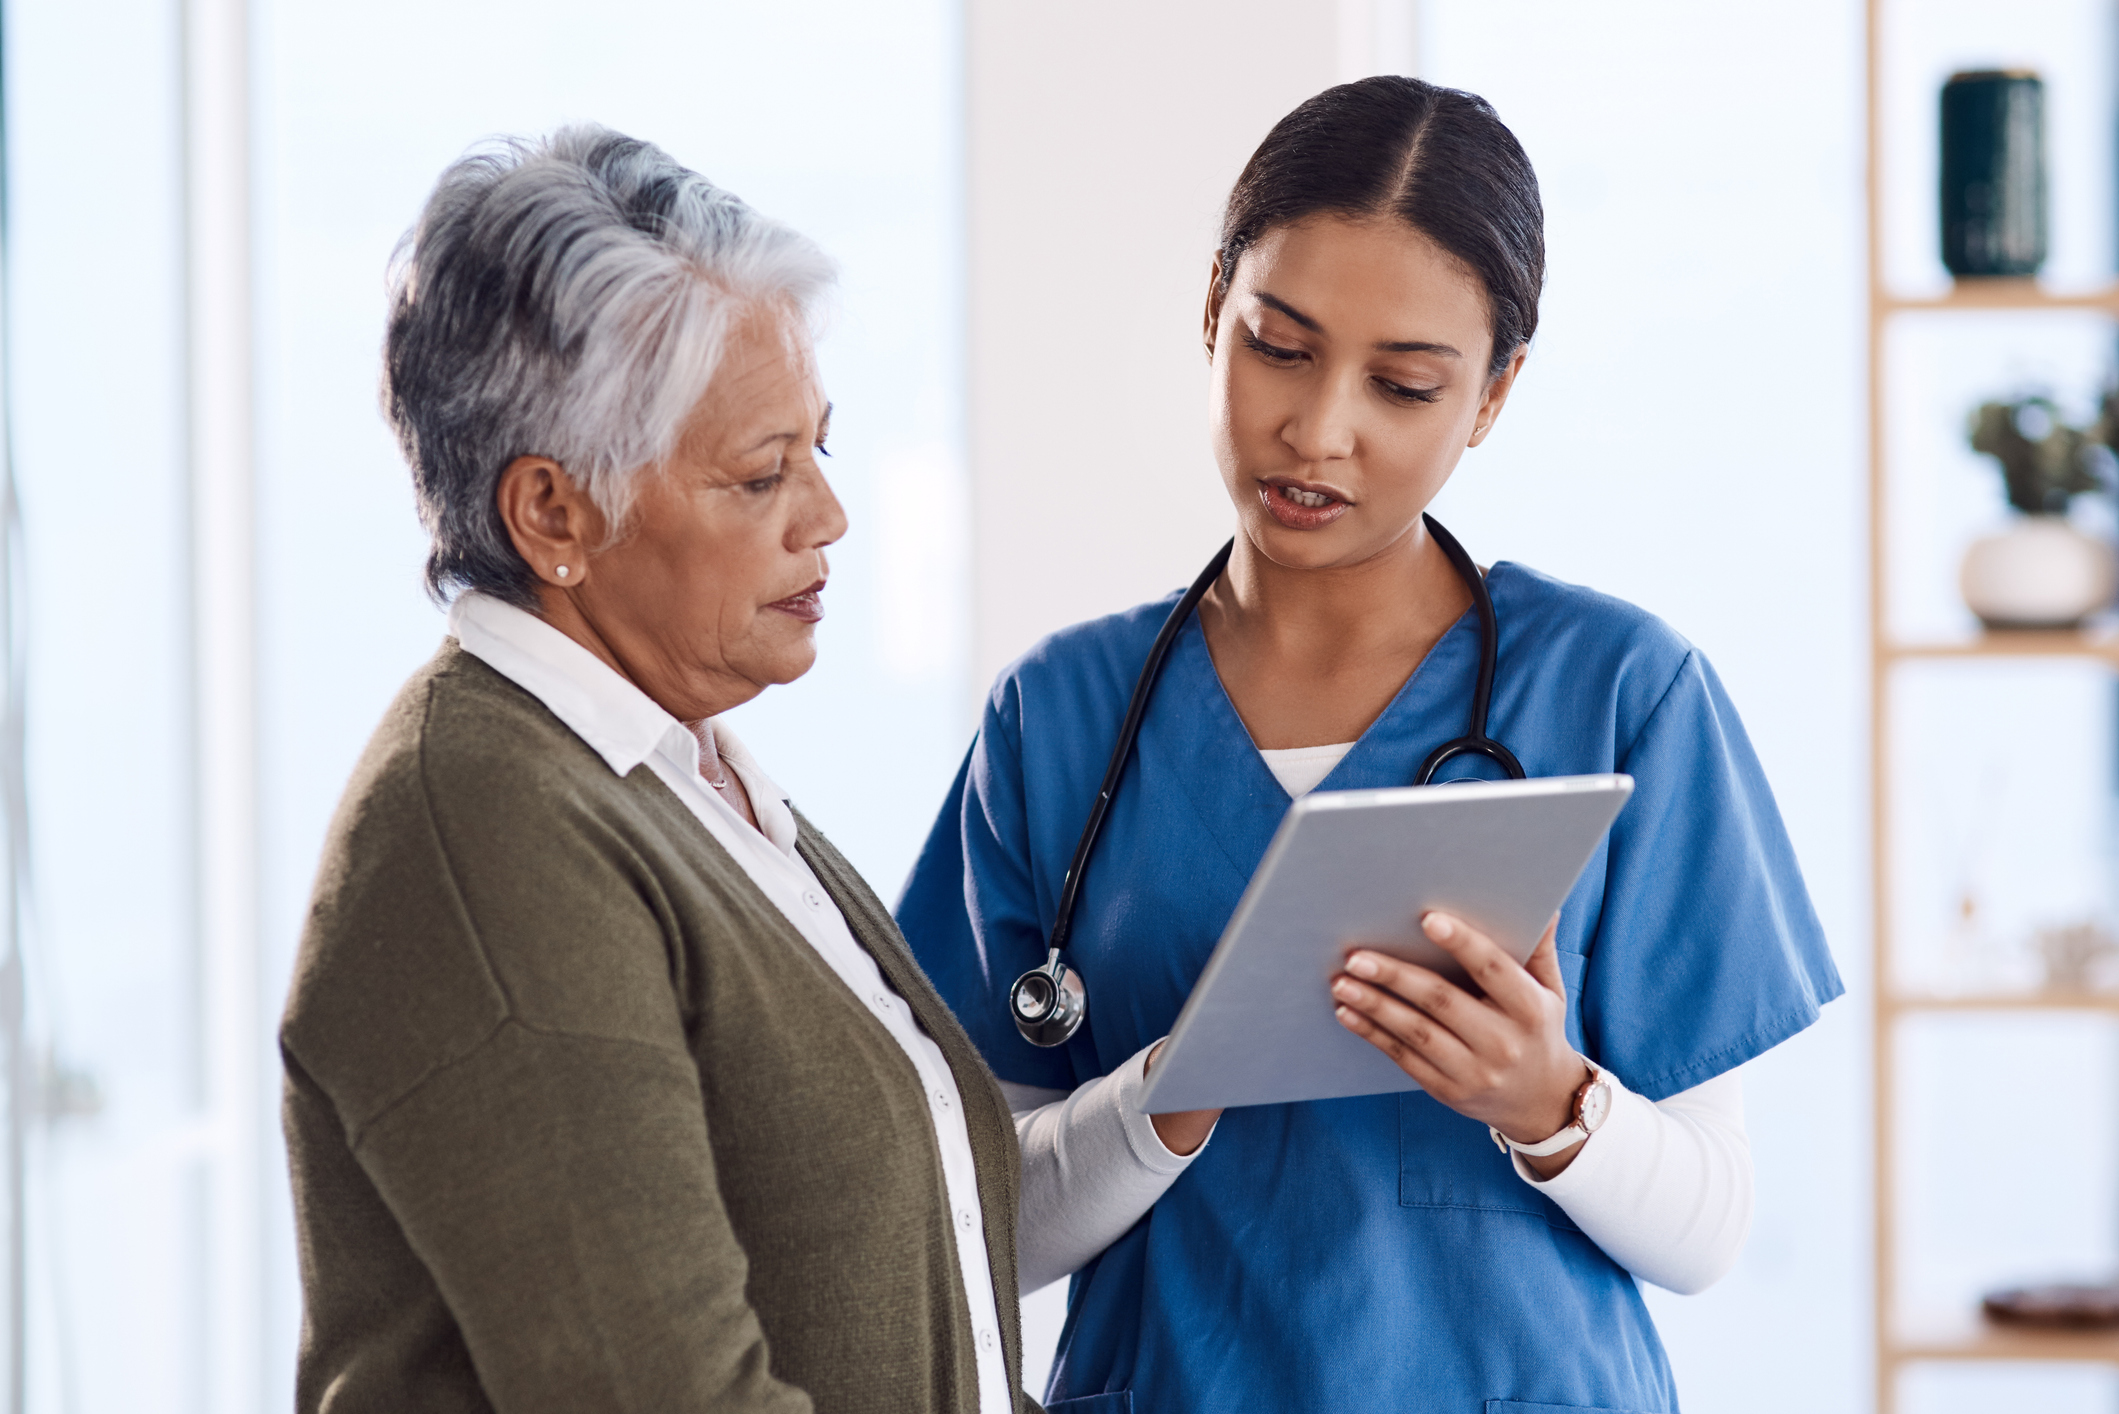 La santé numérique aide les infirmières canadiennes à améliorer les soins, mais il y a encore place à l’amélioration